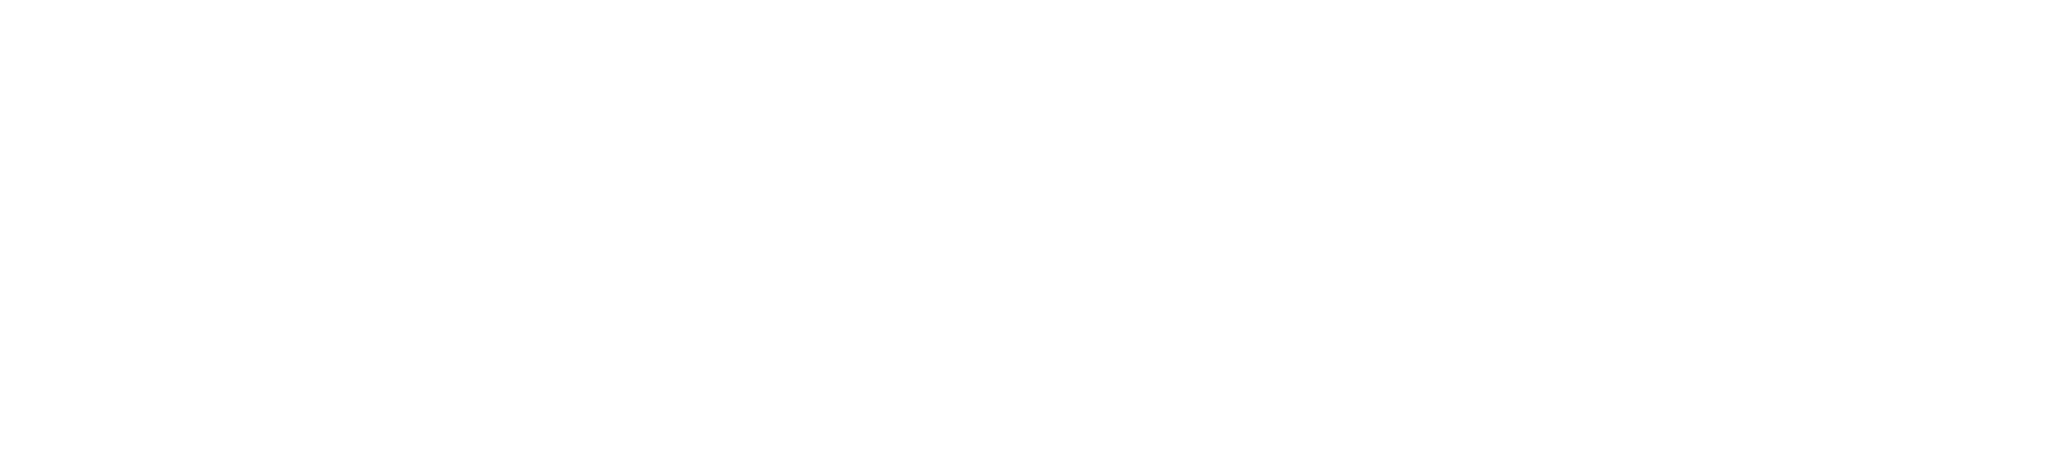 Render It logo